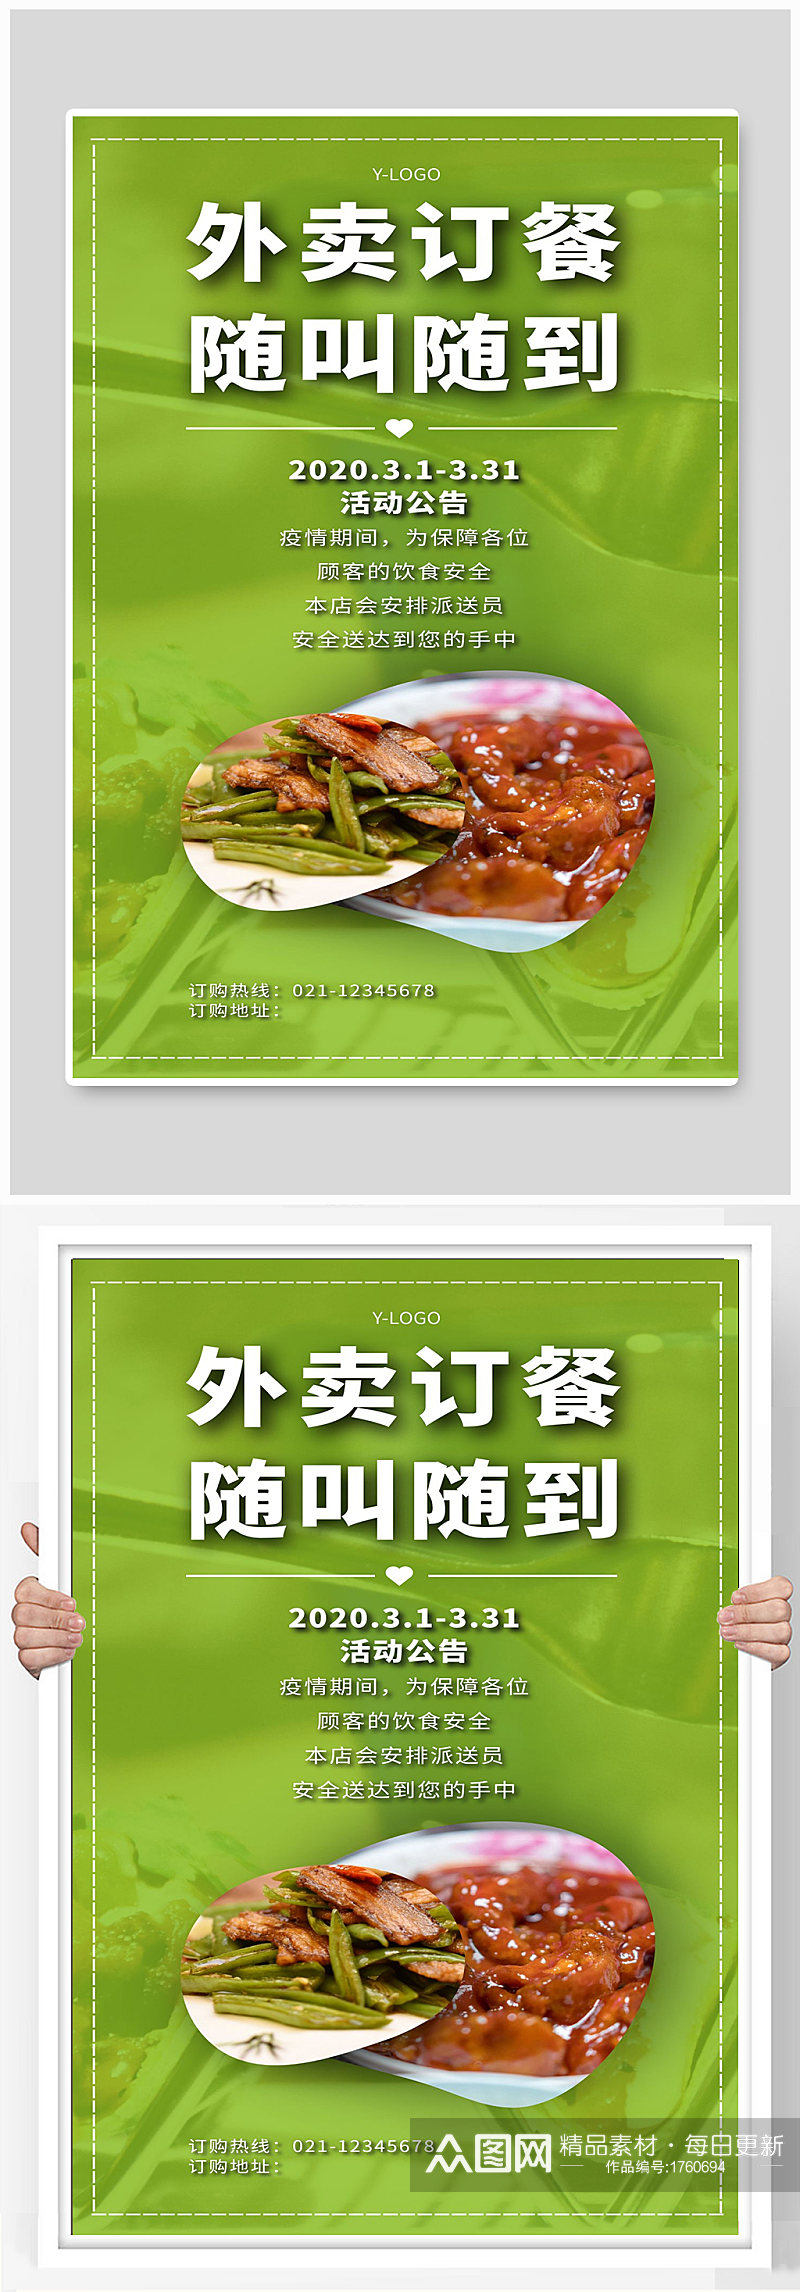 外卖订餐宣传海报设计素材